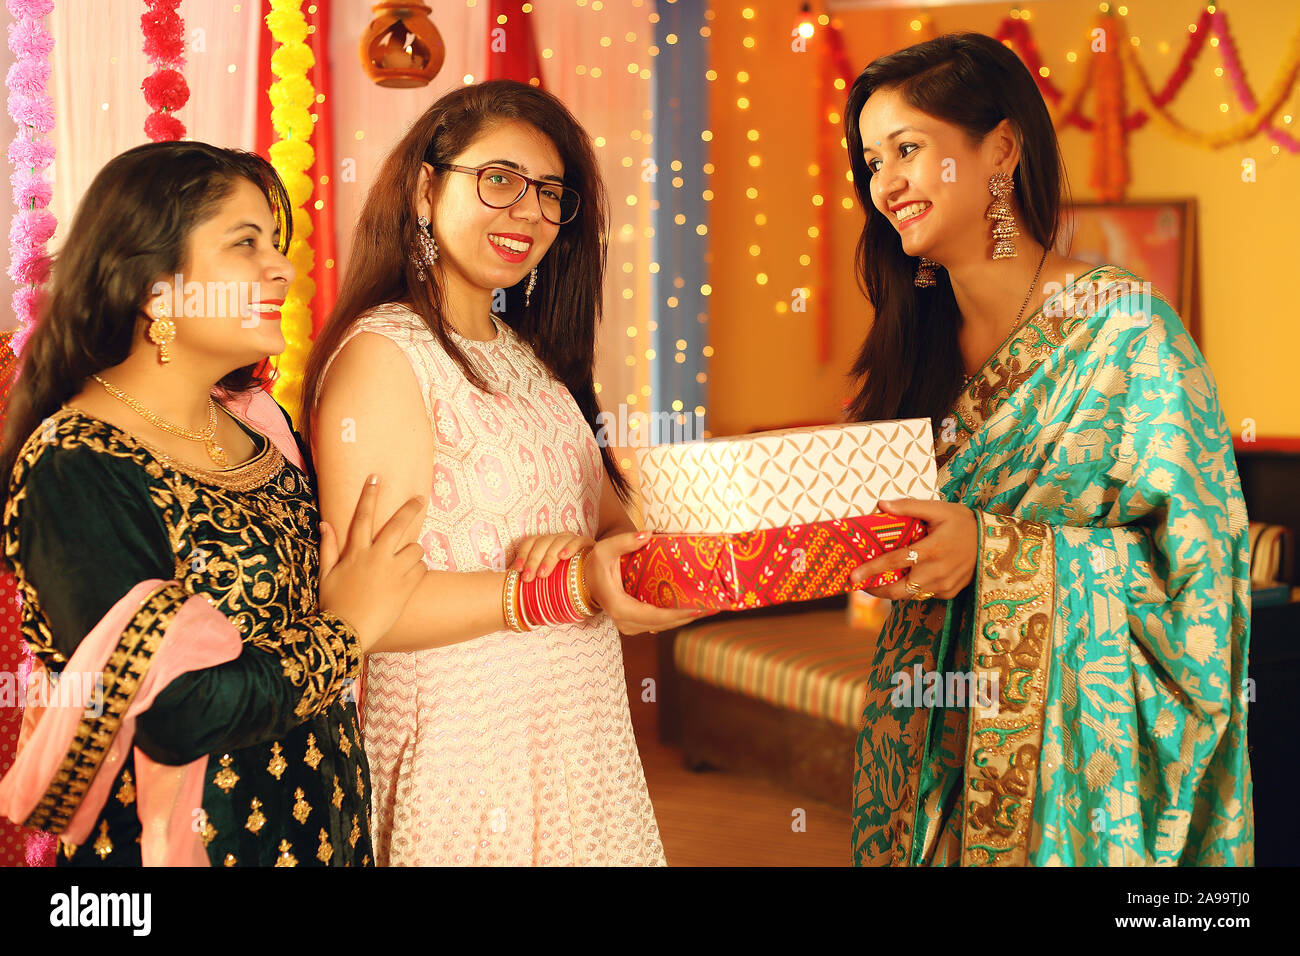 Jolies jeunes femmes indiennes portant des vêtements ethniques traditionnels cadeau donner à une femme, plus de flou d'arrière-plan de fête. Banque D'Images